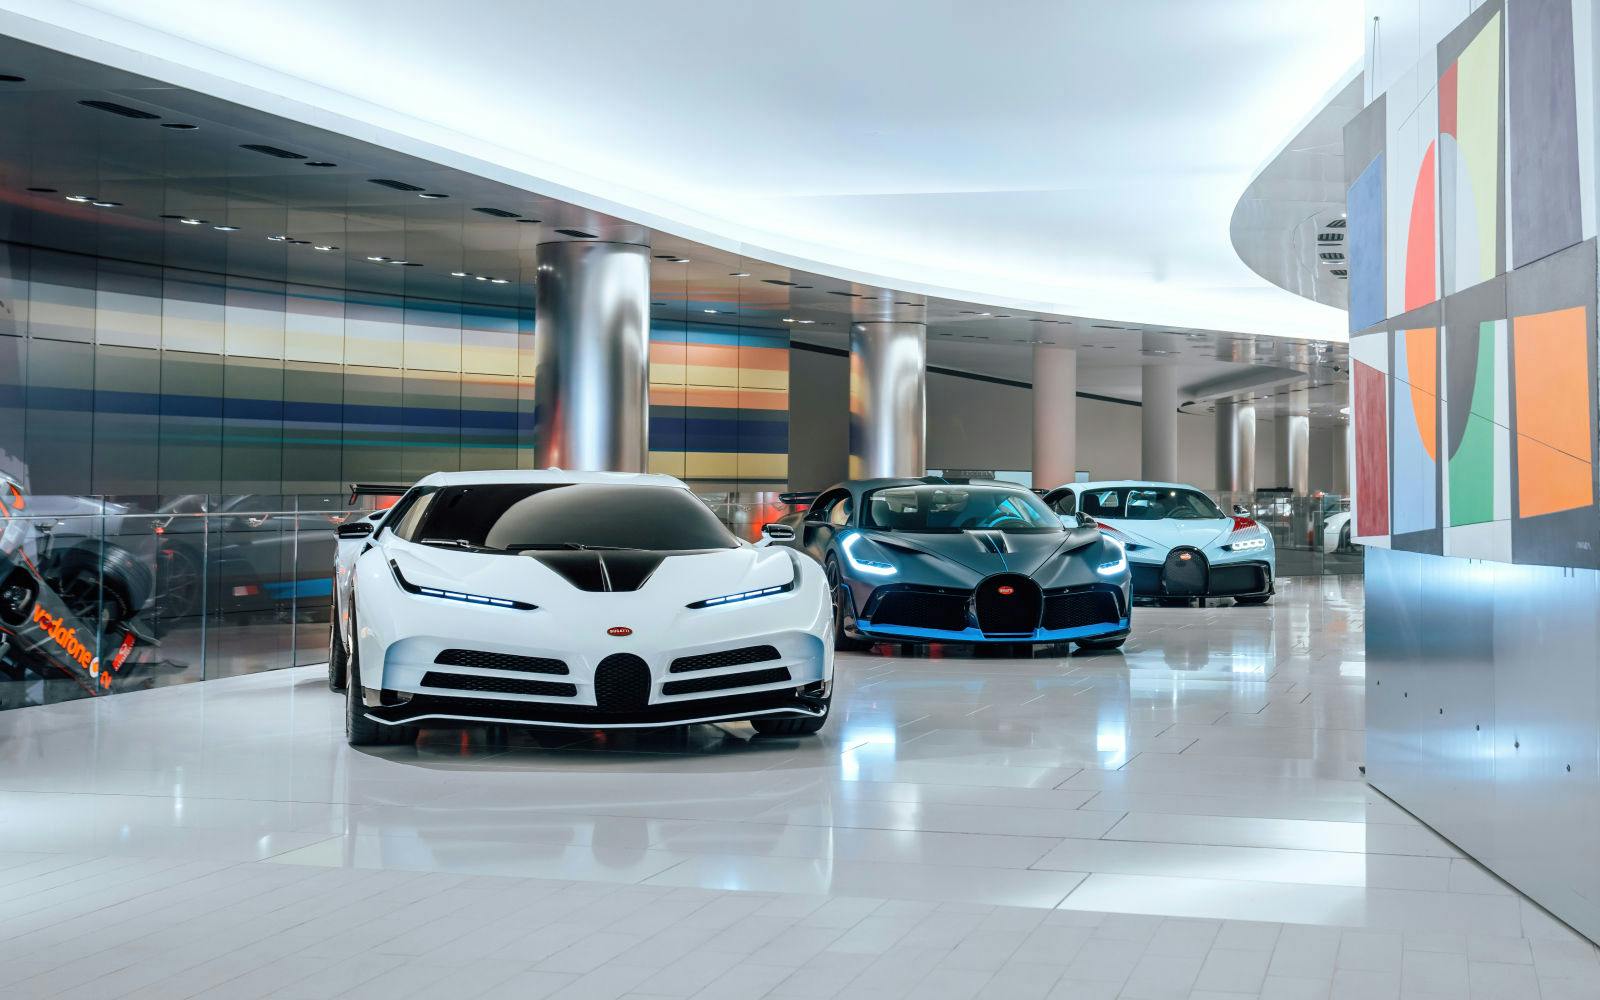 La Collection de Voitures de S.A.S. le Prince de Monaco accueille  une exposition d’hypersportives Bugatti parmi les plus exclusives qui soient jusqu’au 28 avril.